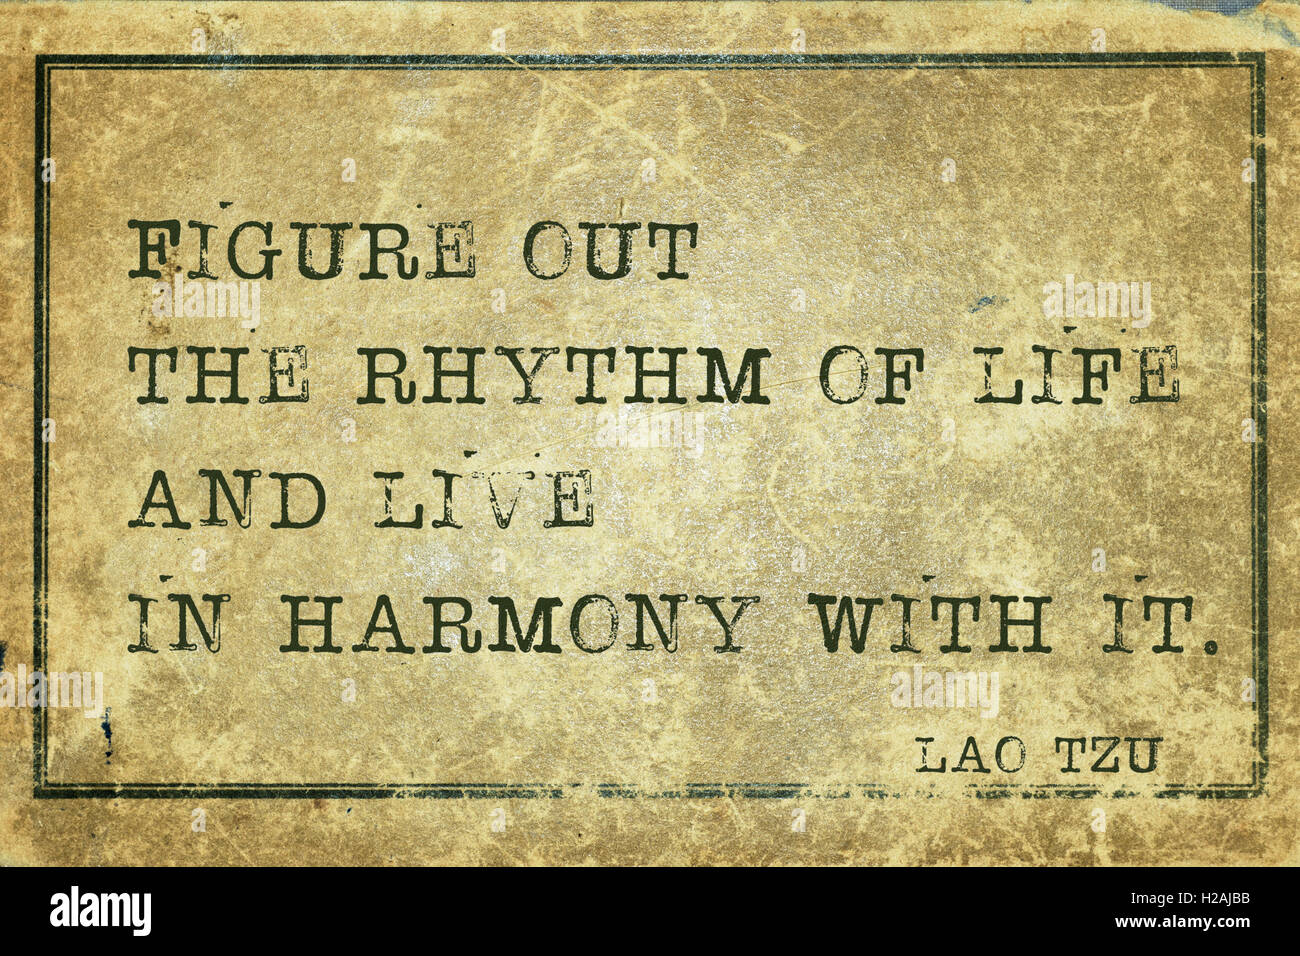 Herauszufinden Sie, den Rhythmus des Lebens - Alter chinesische Philosoph Laotse Zitat auf Grunge Vintage Karton gedruckt Stockfoto